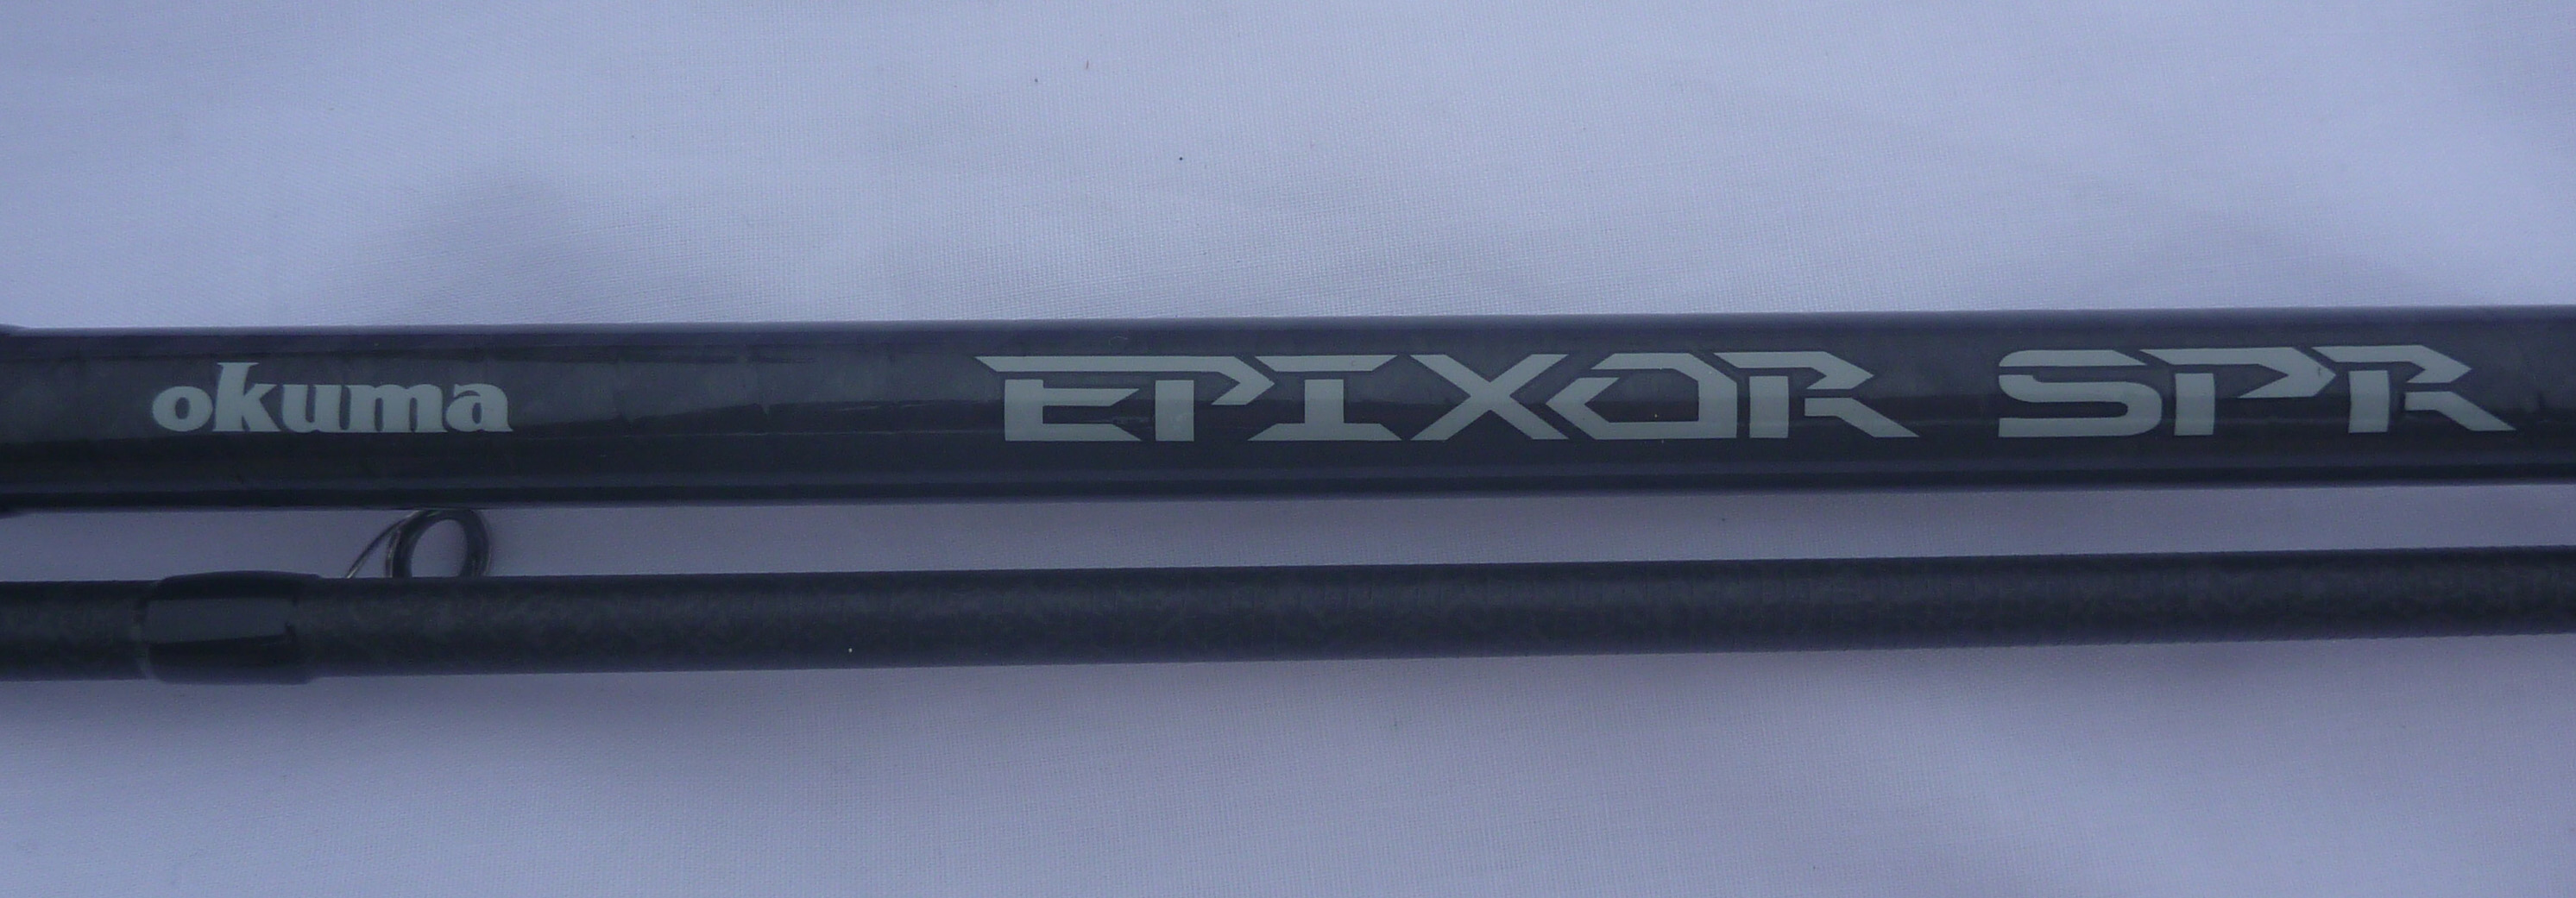 canne spinning okuma Epixor SPR 3.00m 15-42 g 2sec prix 960 dh